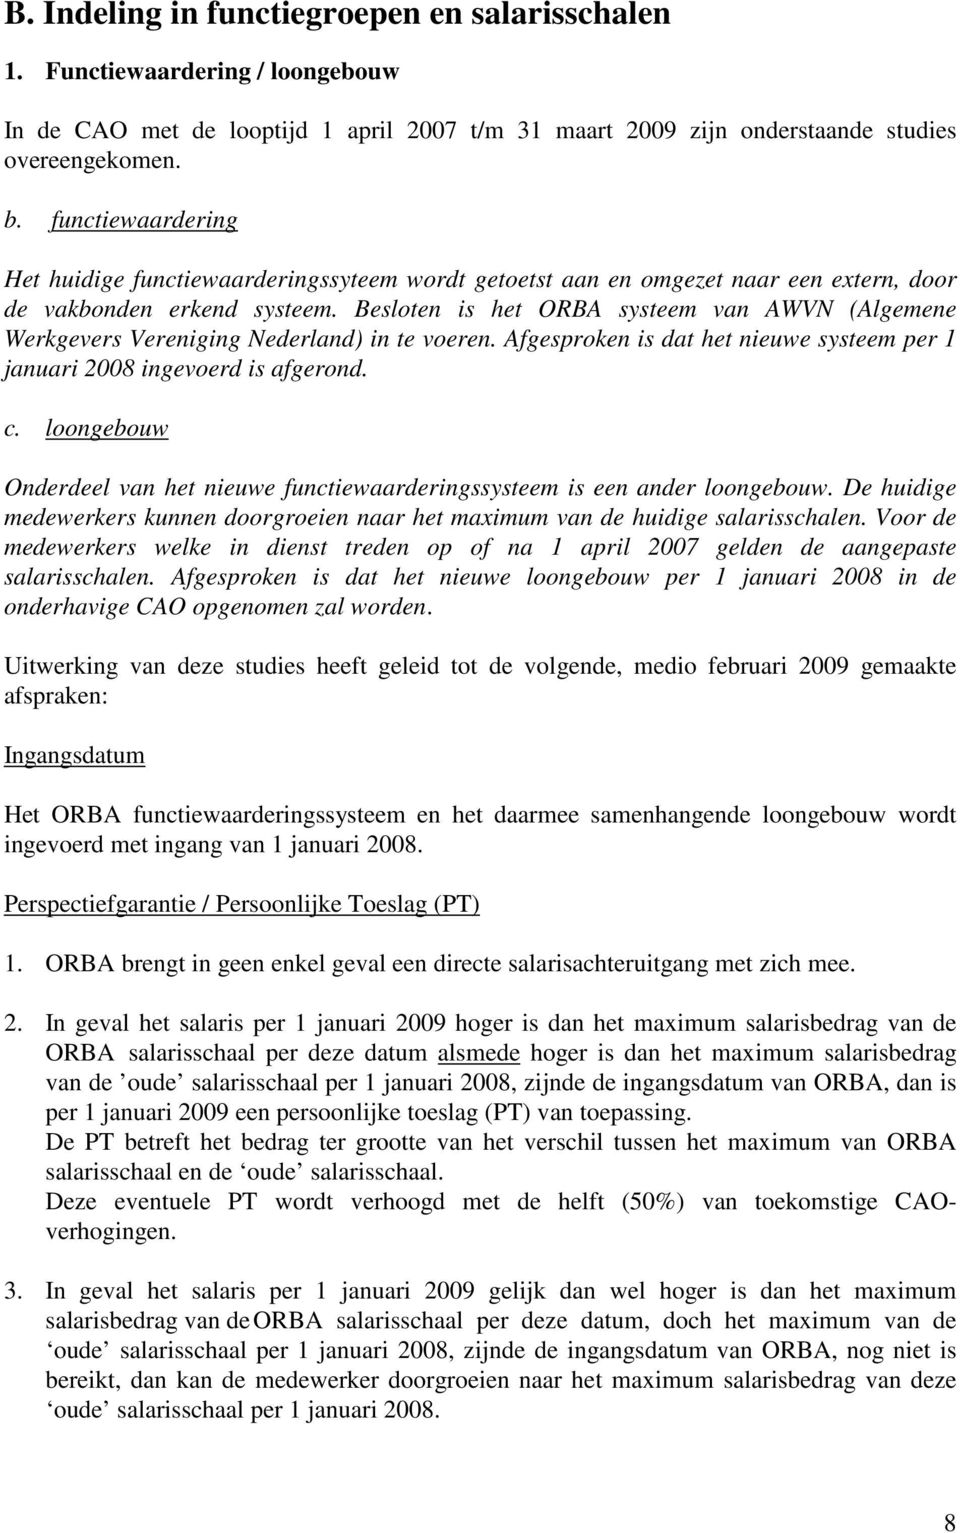 Besloten is het ORBA systeem van AWVN (Algemene Werkgevers Vereniging Nederland) in te voeren. Afgesproken is dat het nieuwe systeem per 1 januari 2008 ingevoerd is afgerond. c.